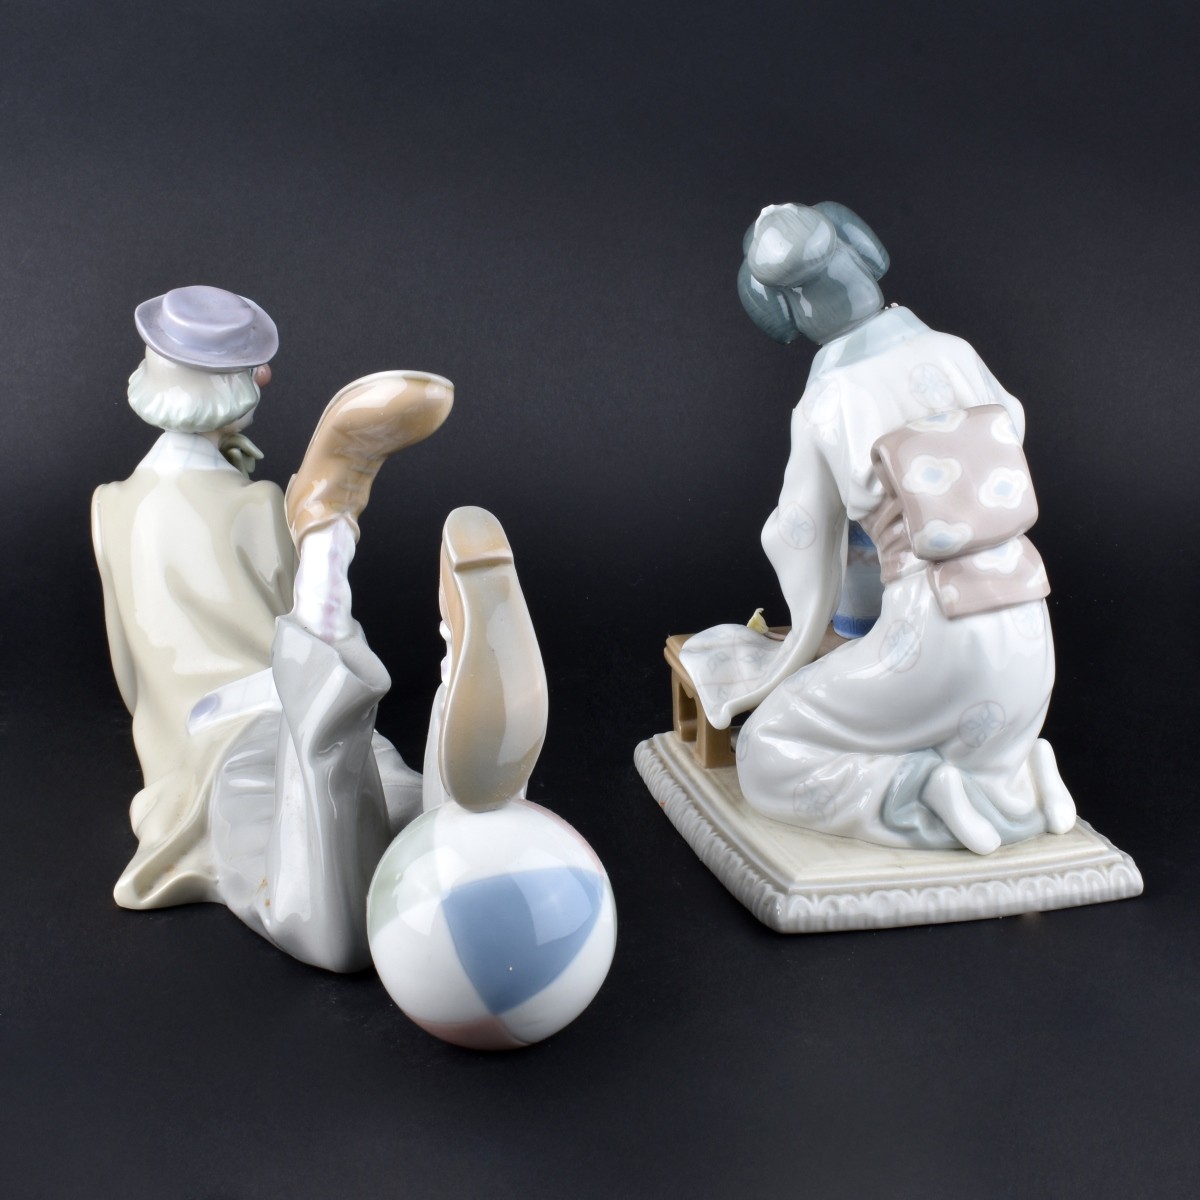 2 Lladro Figurines